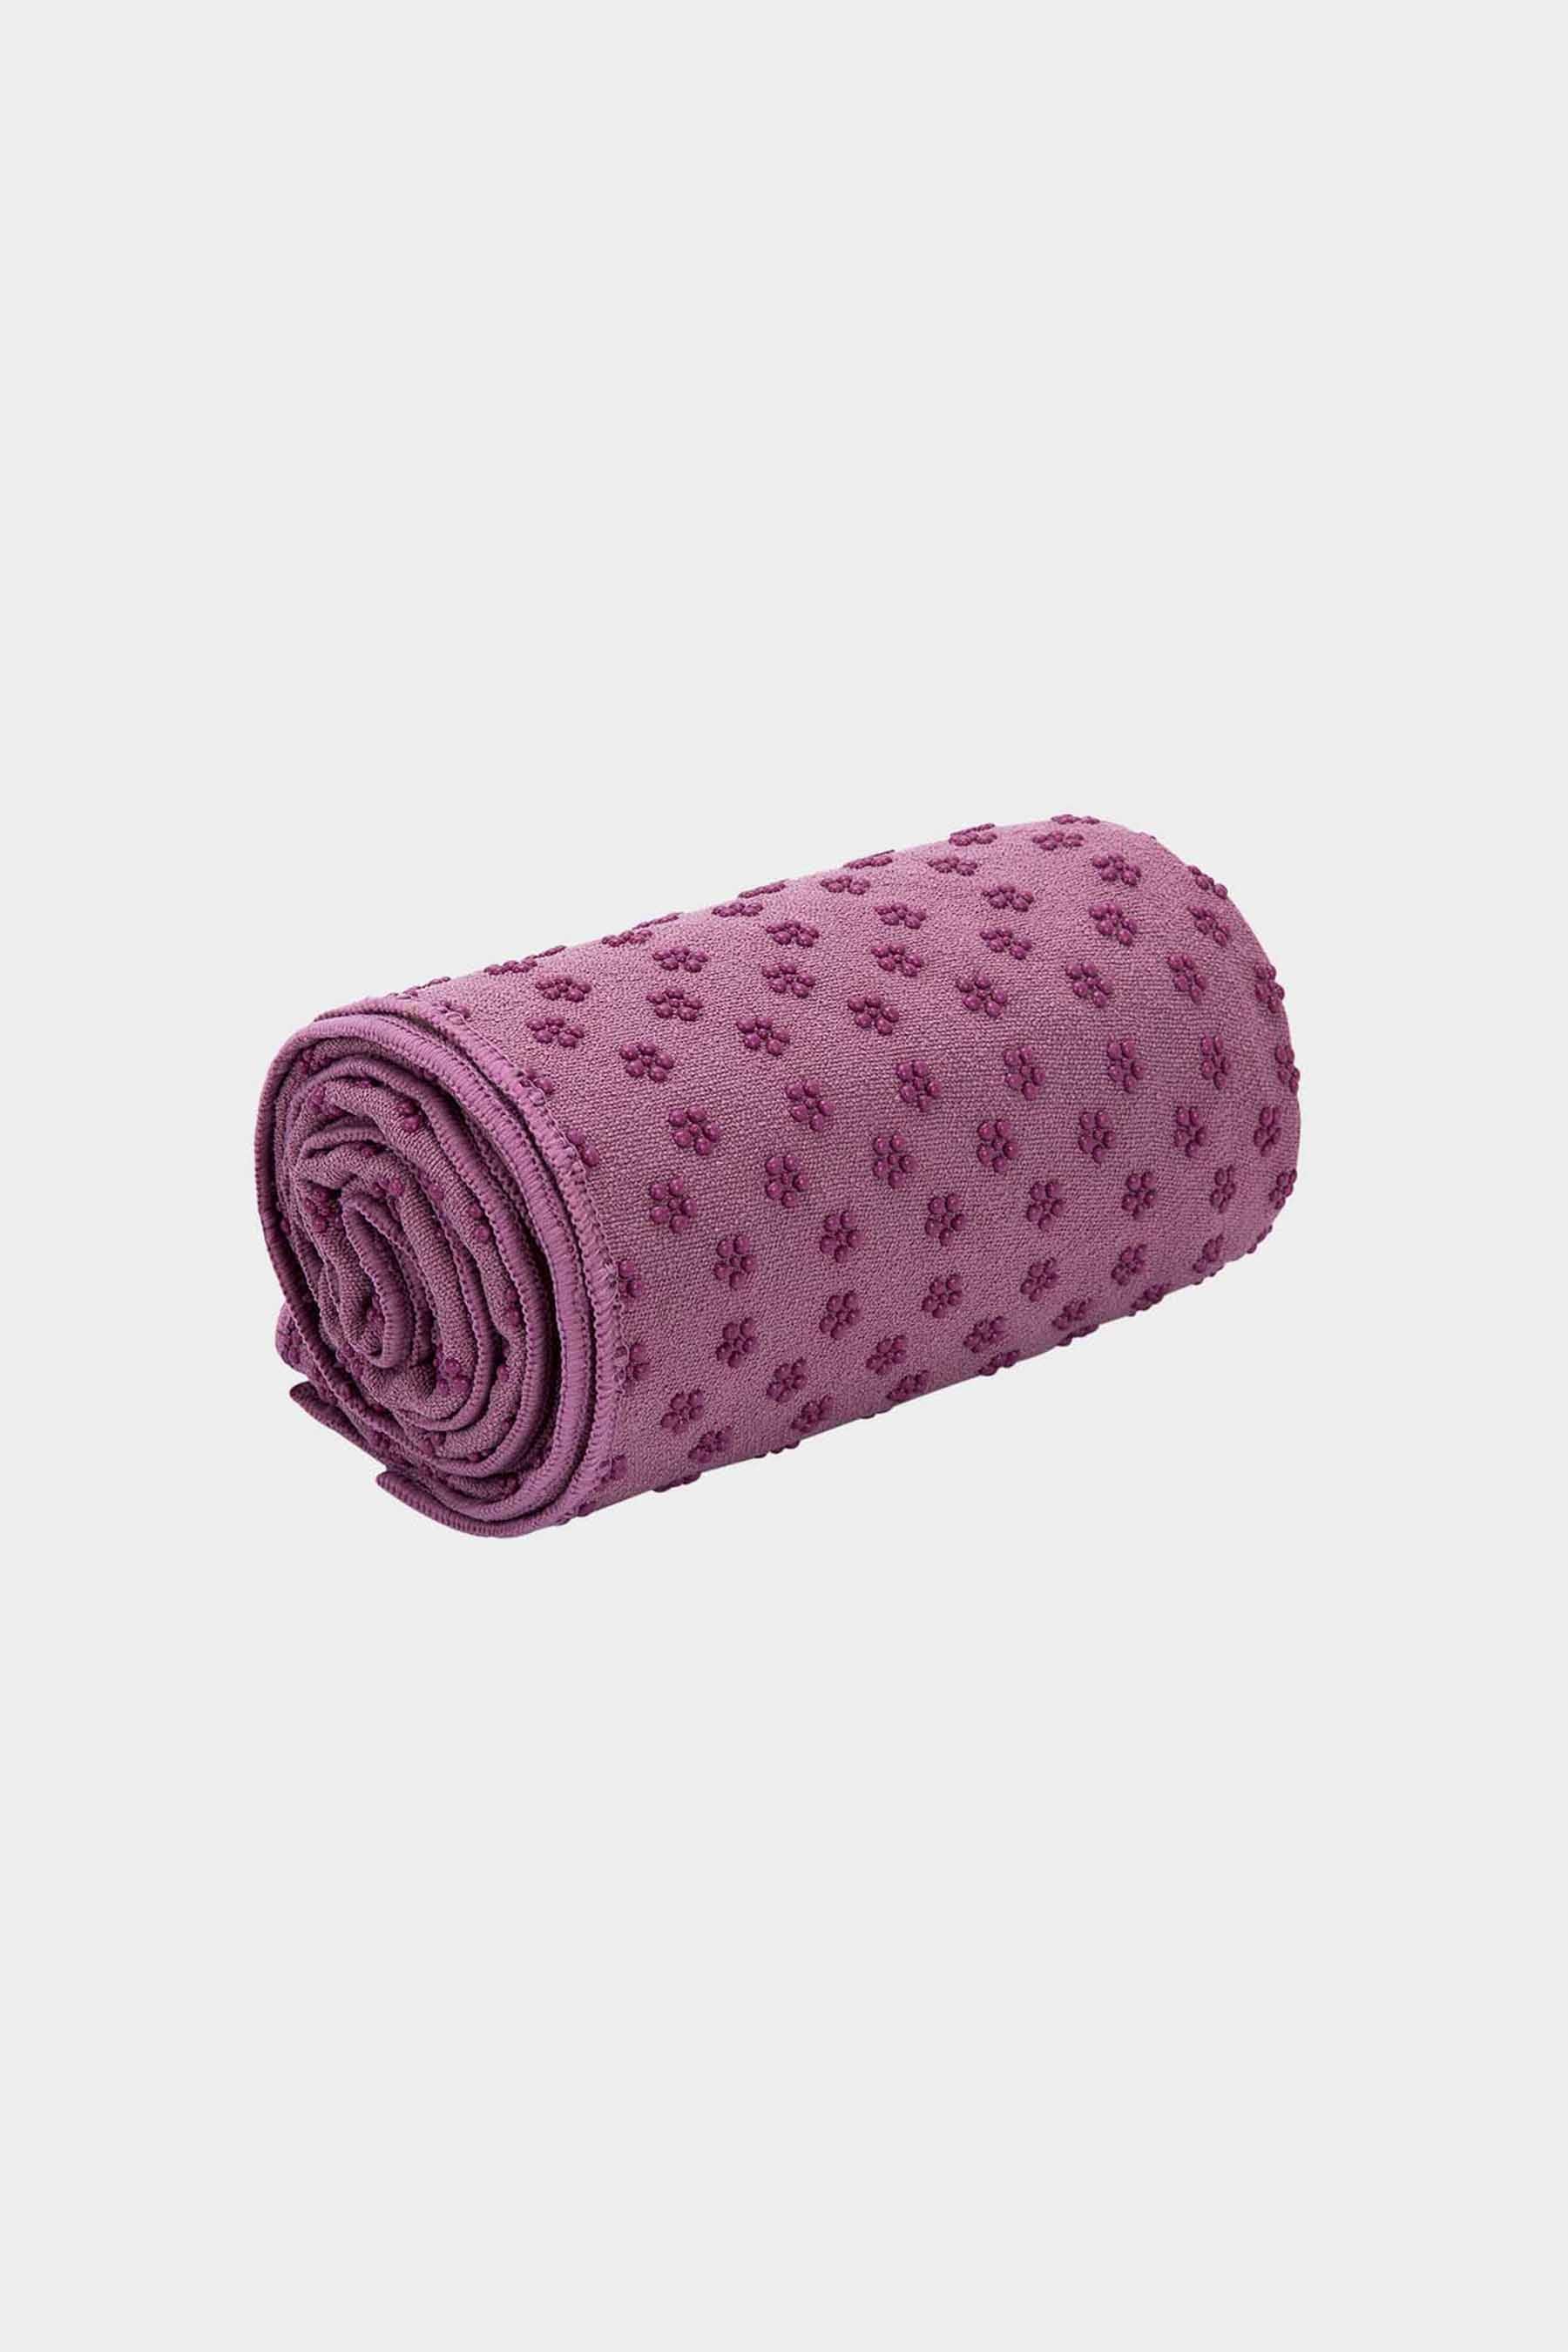 wintersweet Yoga towel